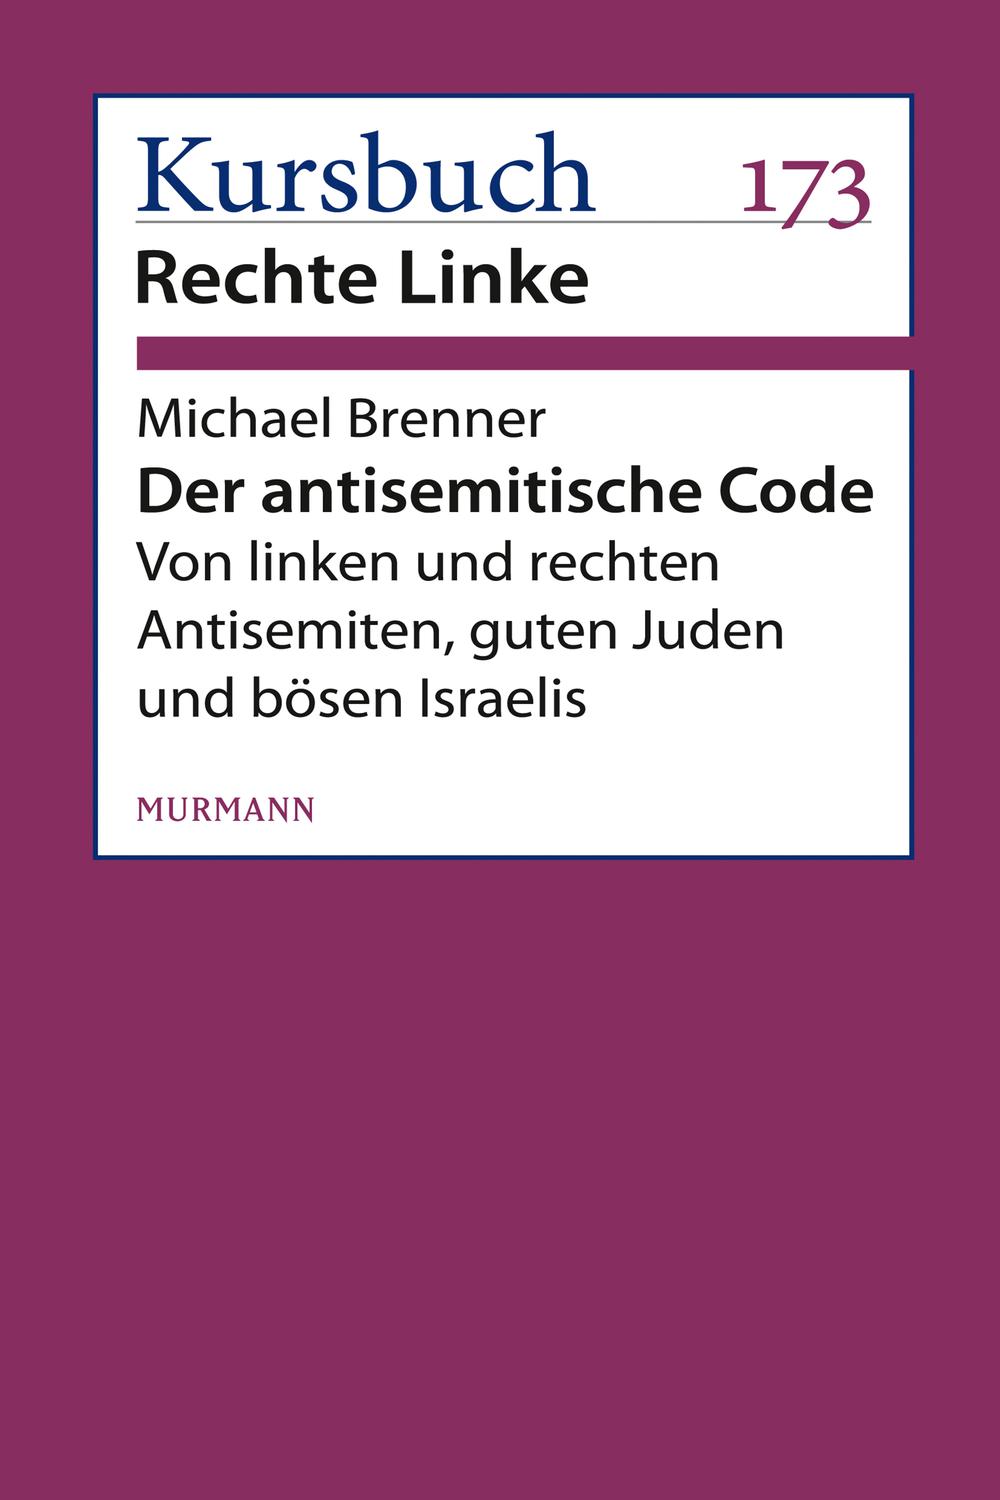 Der antisemitische Code - Michael Brenner